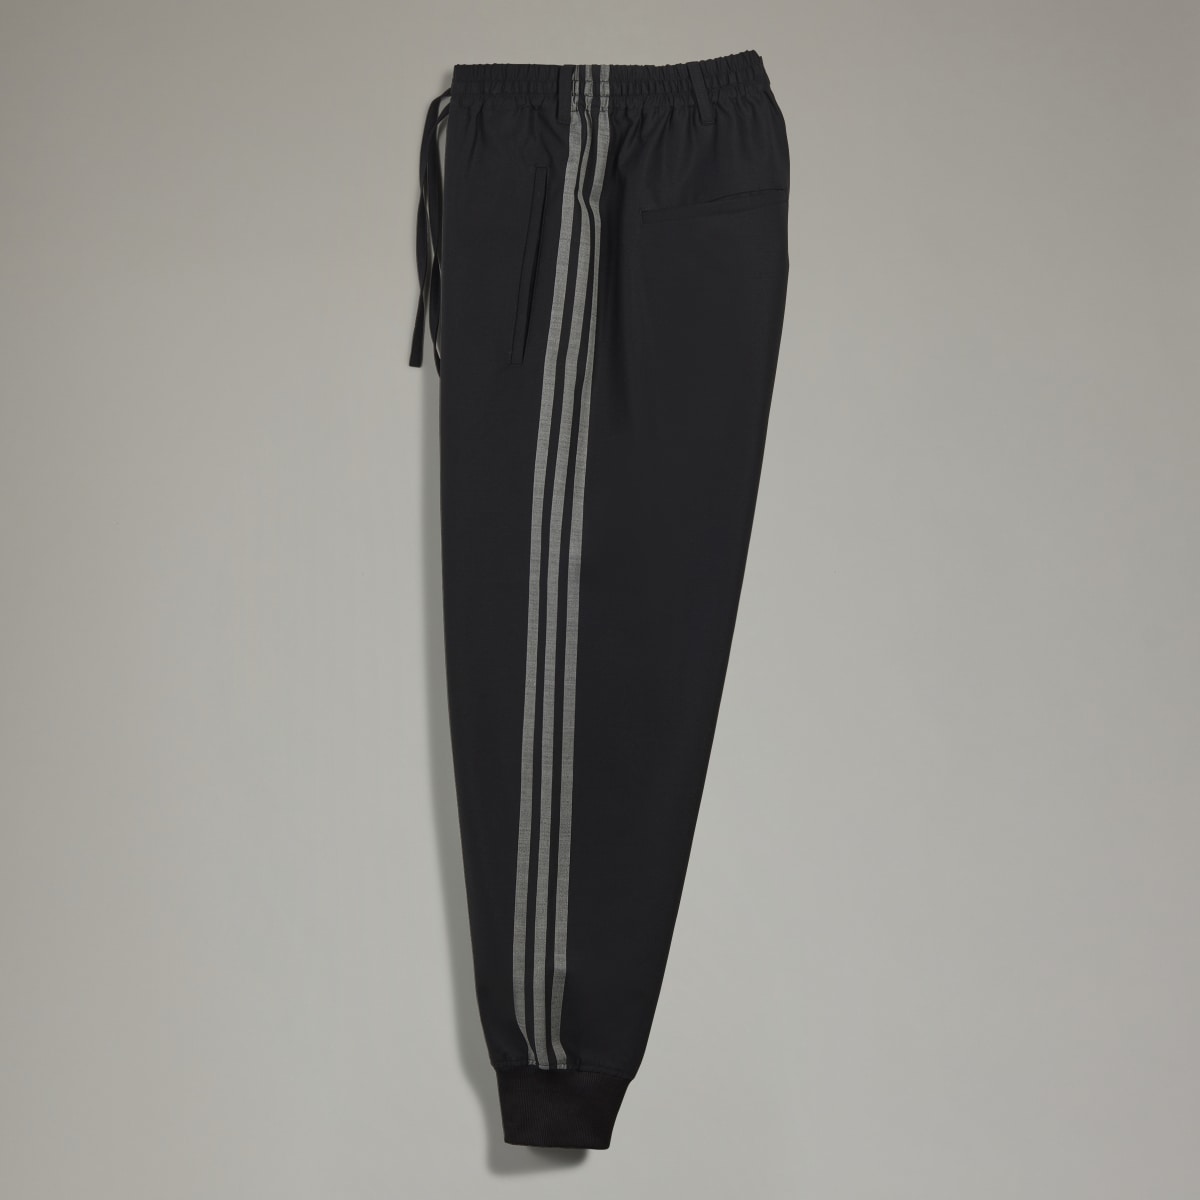 Adidas Y-3 3-Stripes Refined Wool Cuffed Pants. 5